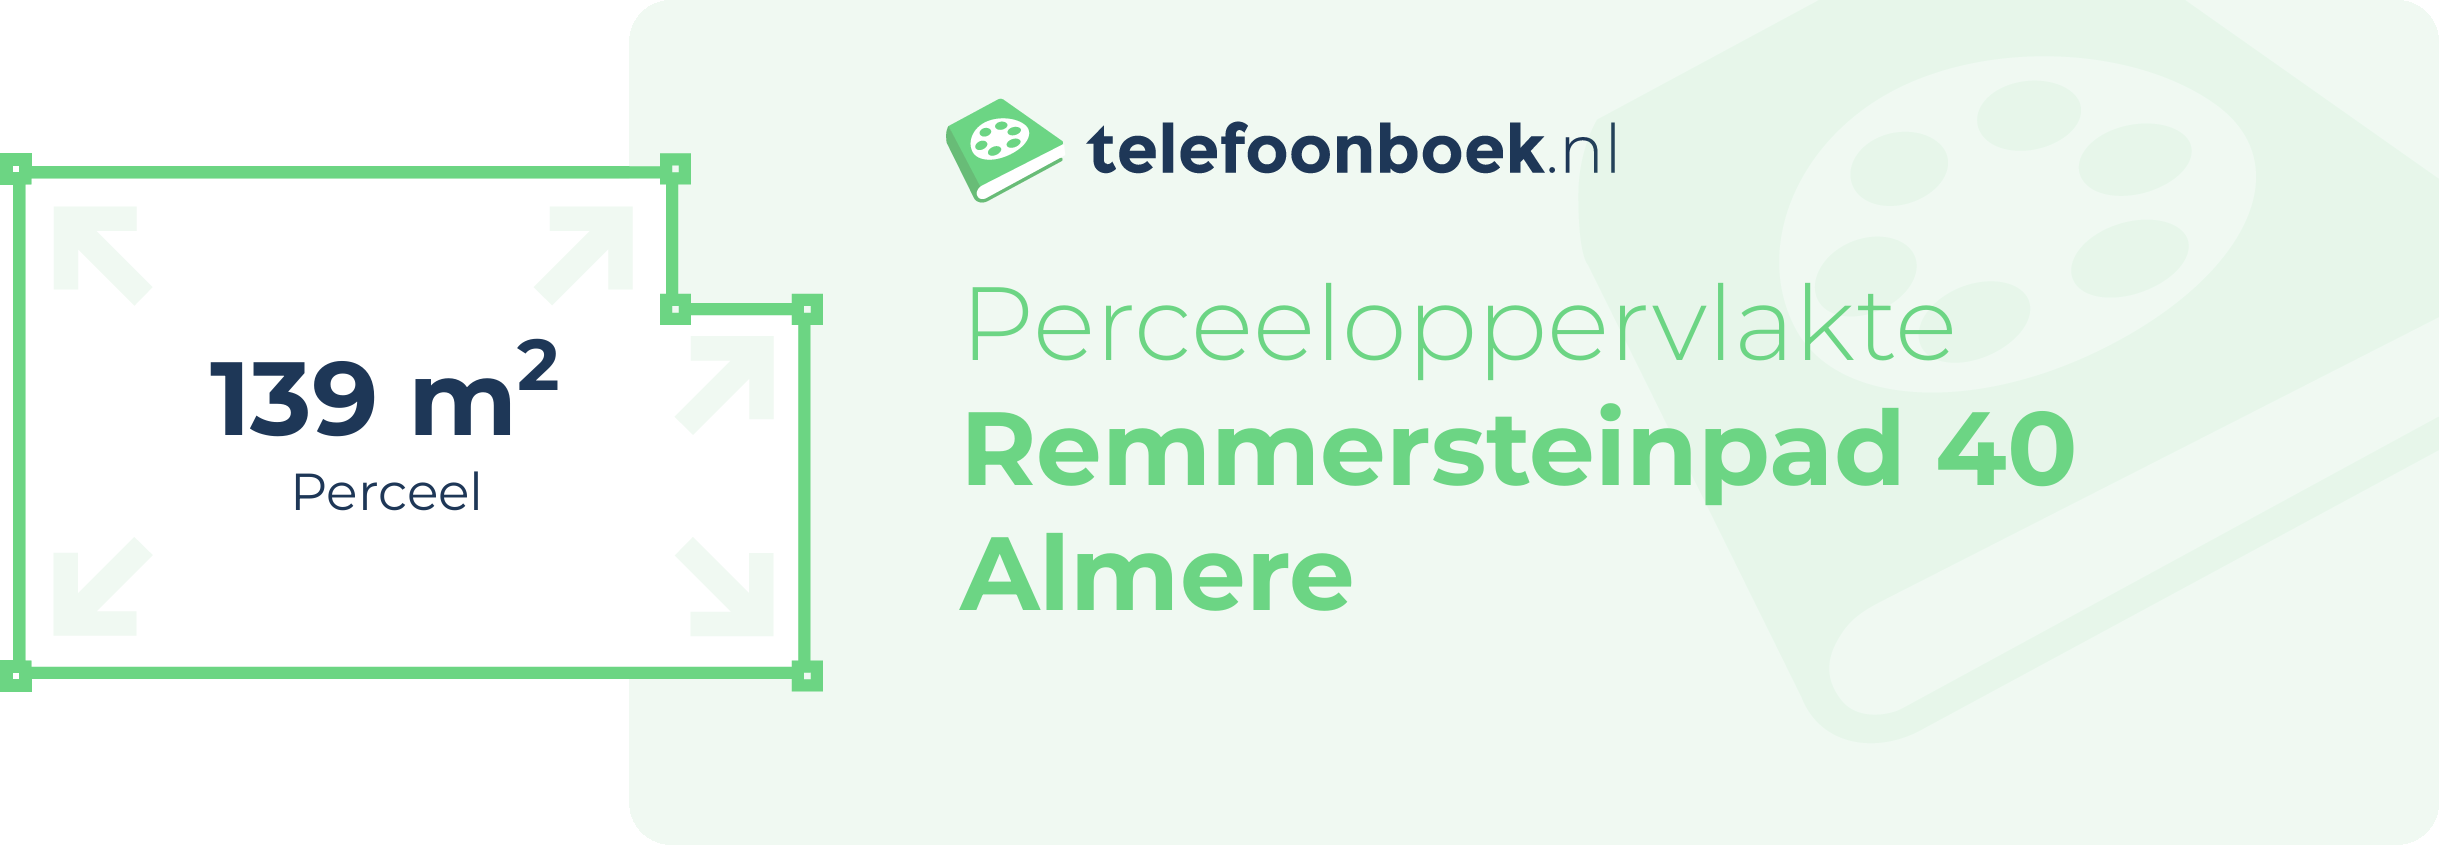 Perceeloppervlakte Remmersteinpad 40 Almere